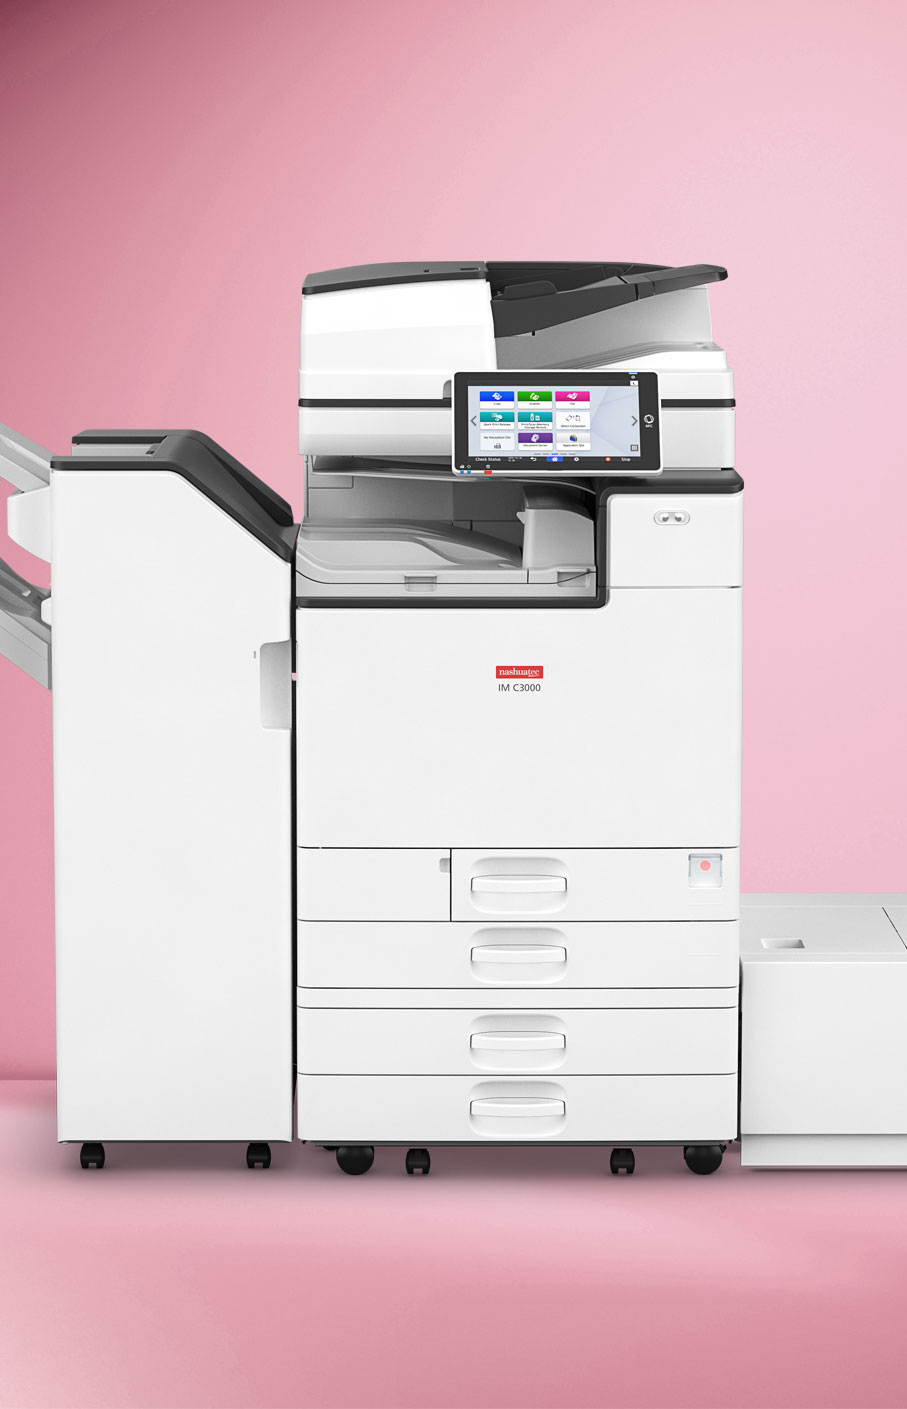 nashuatec-imc4500a-mit-finisher-multifunktionsdrucker-fuer-scanning-farbdruck-und-schwarz-weiss-druck